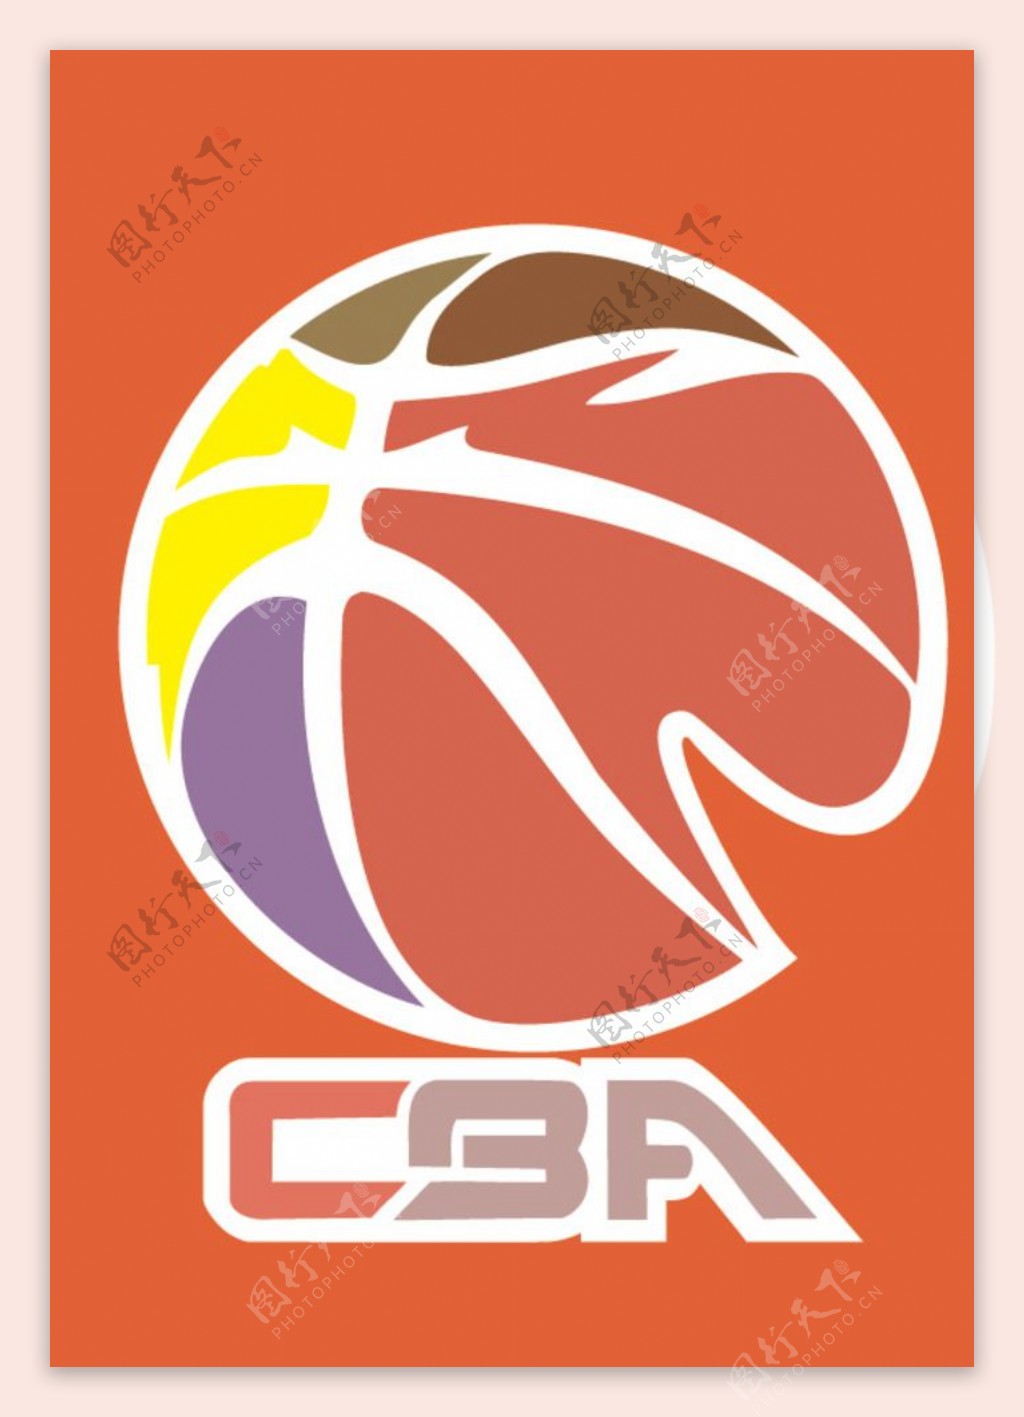 中国男子篮球联赛CBA标志